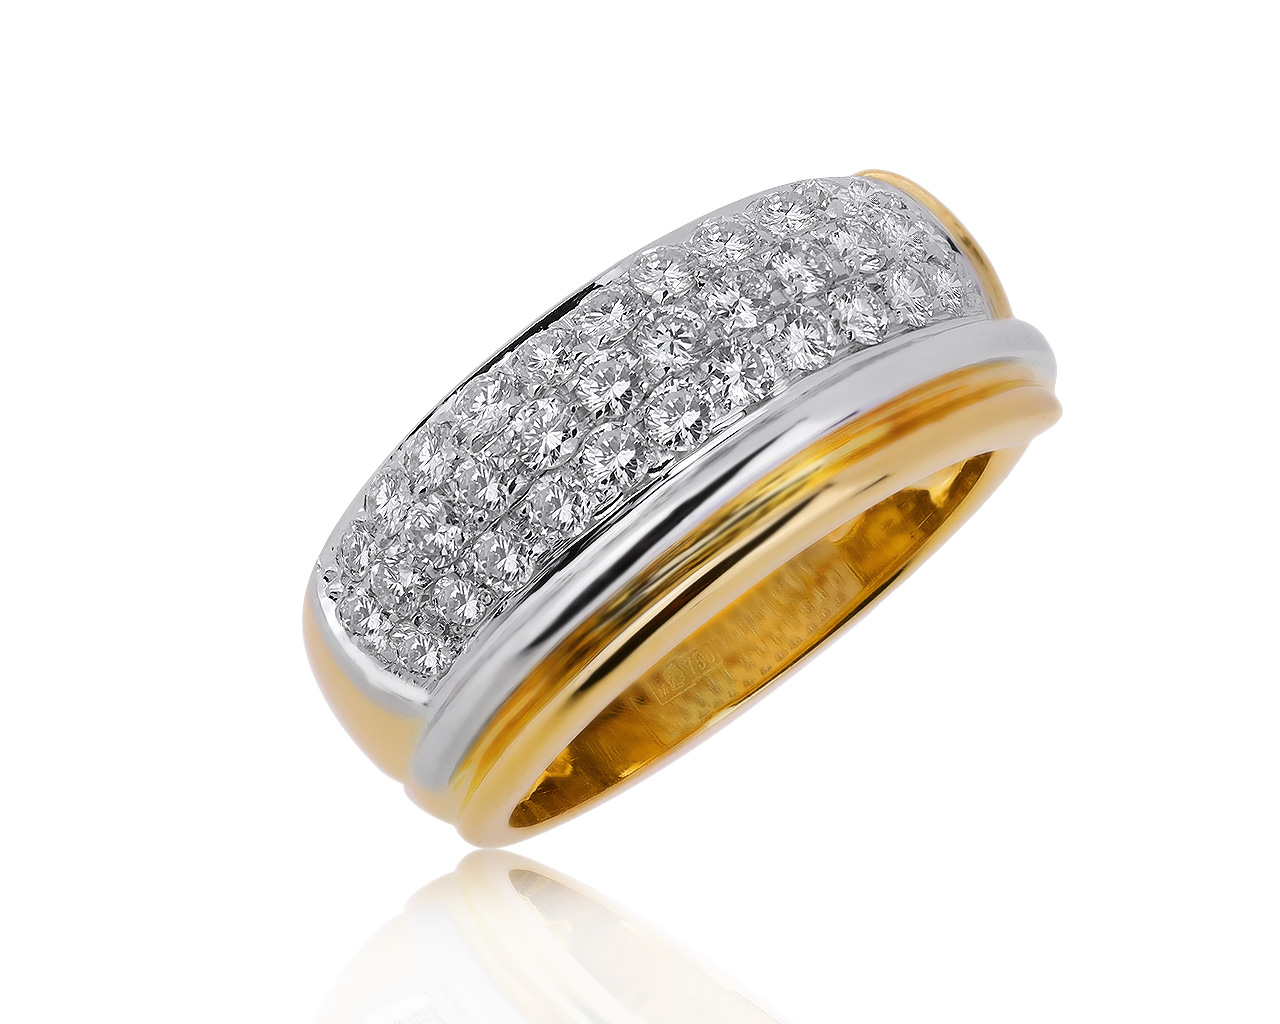 Оригинальное золотое кольцо с бриллиантами 0.80ct Damiani